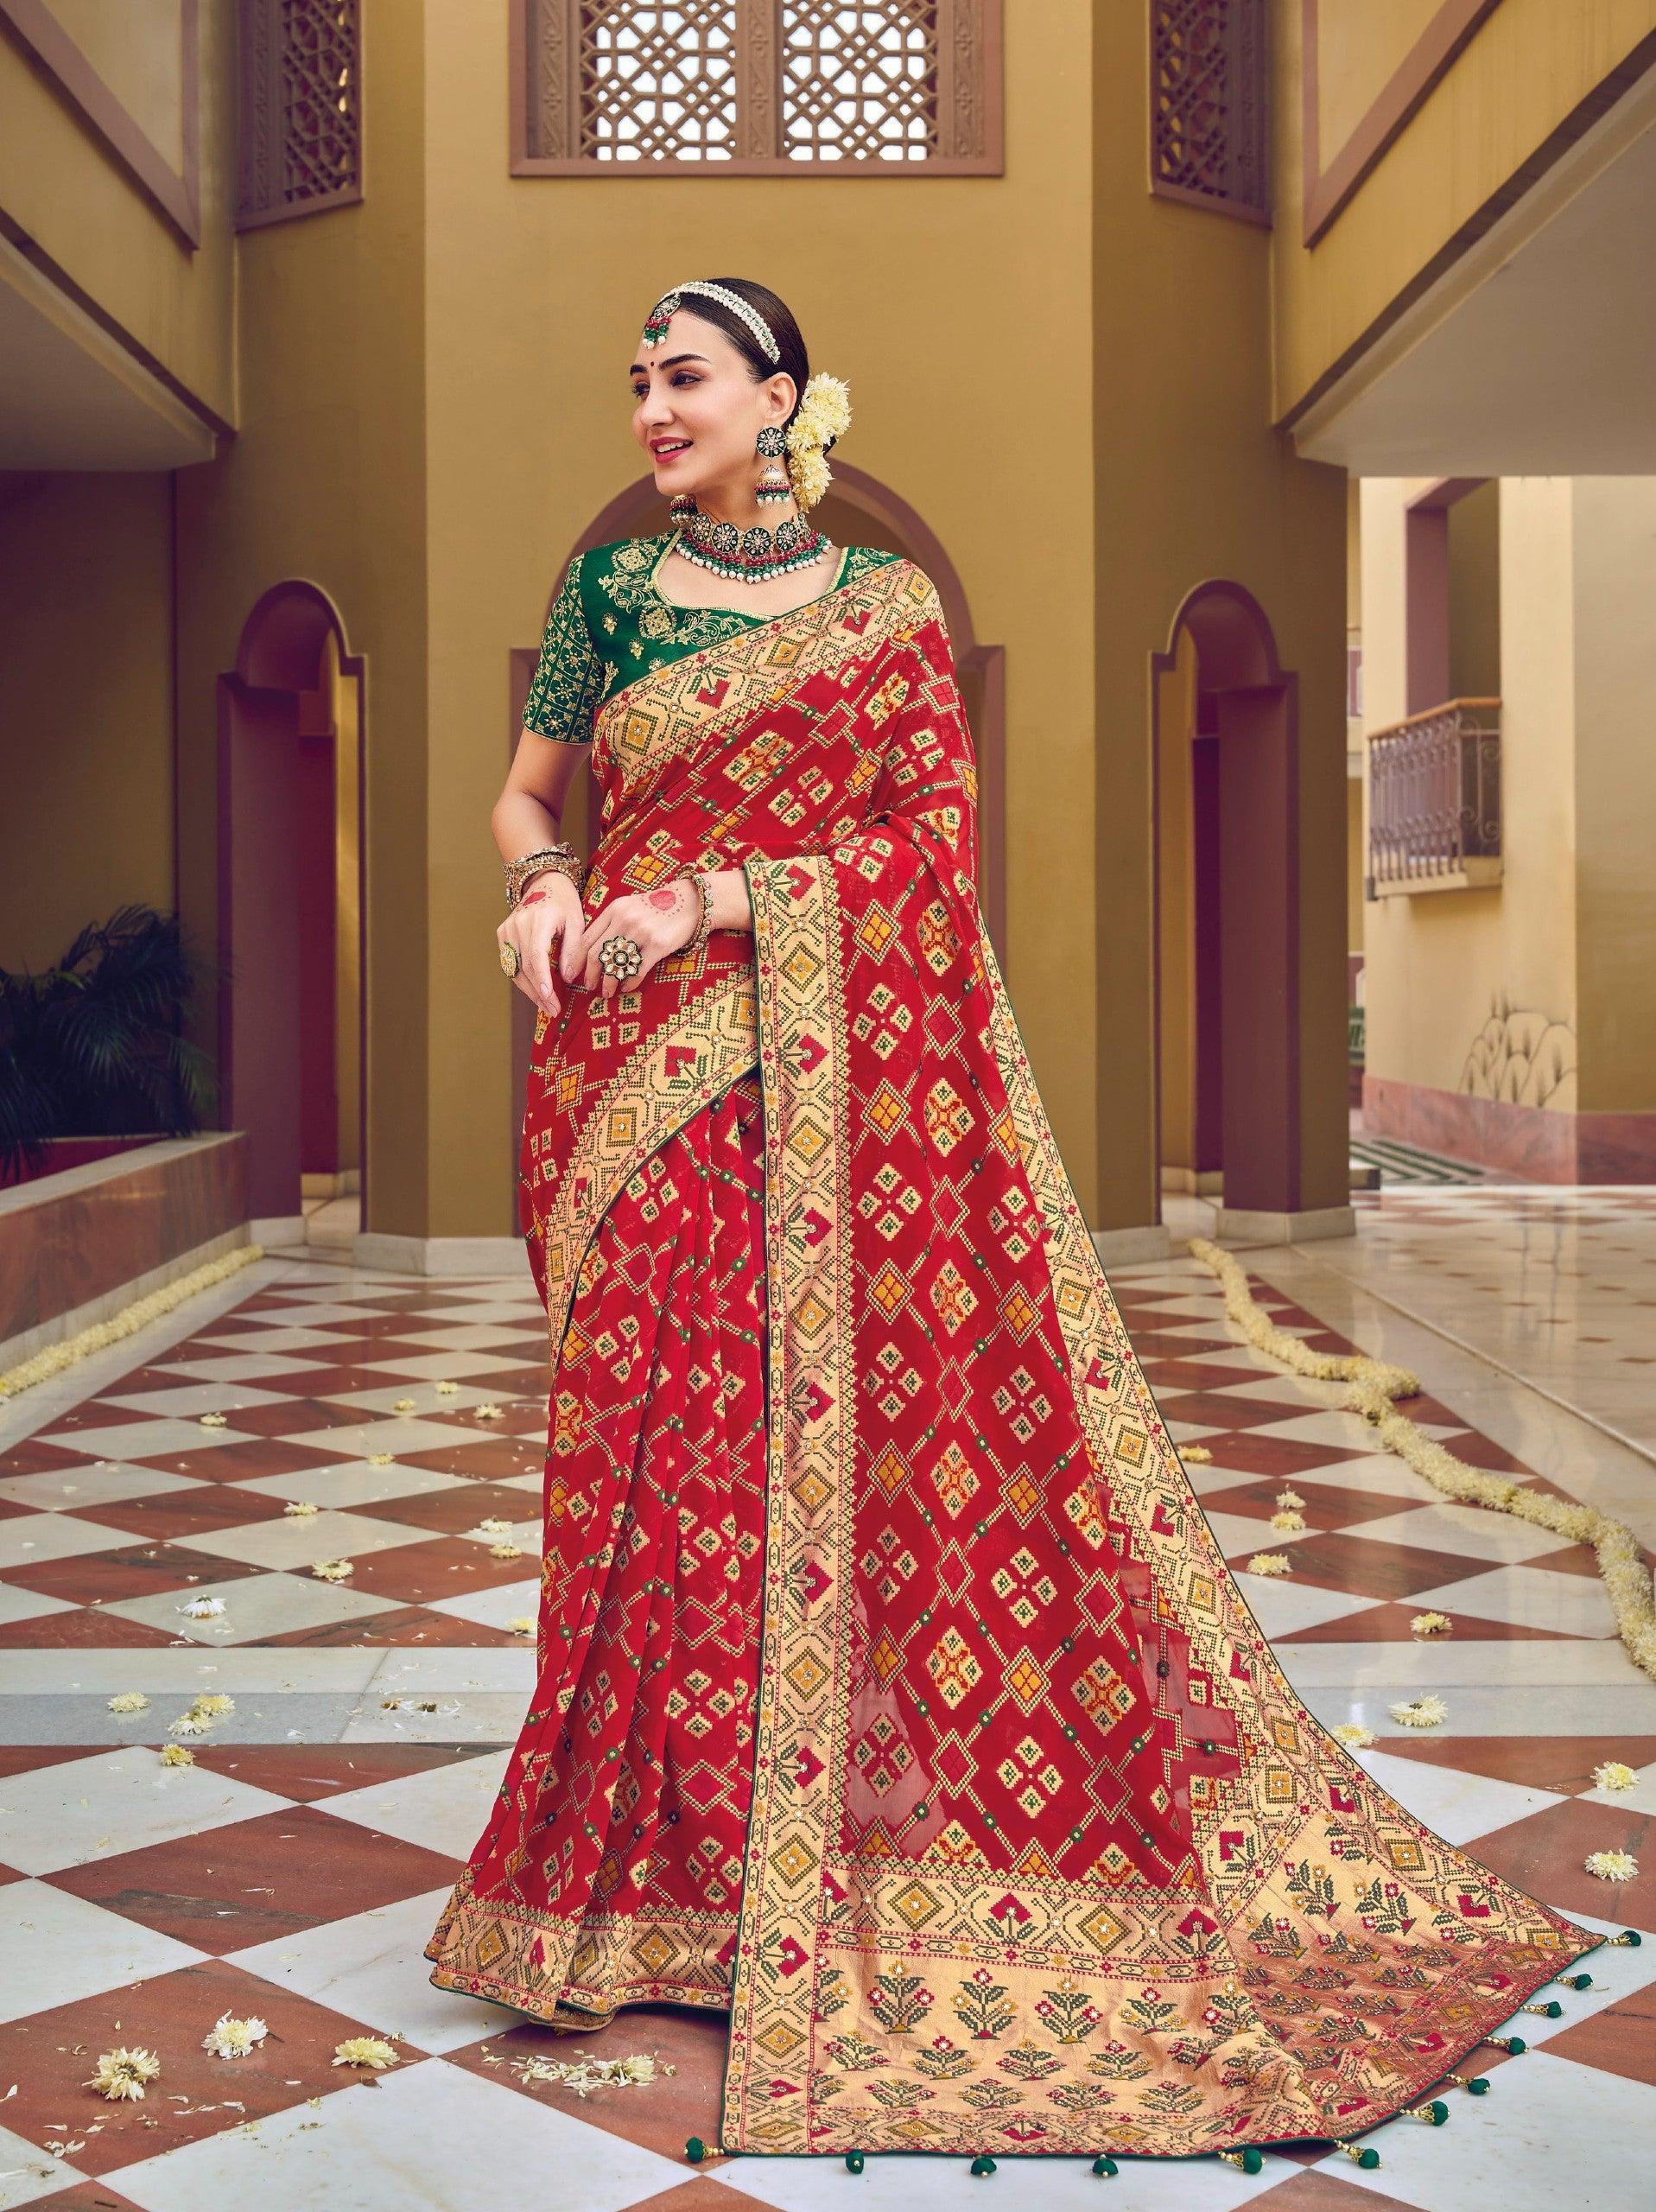 Kerala Hindu bridal sarees 2021Latest wedding Saree collection inspiration  for 2021 - YouTube